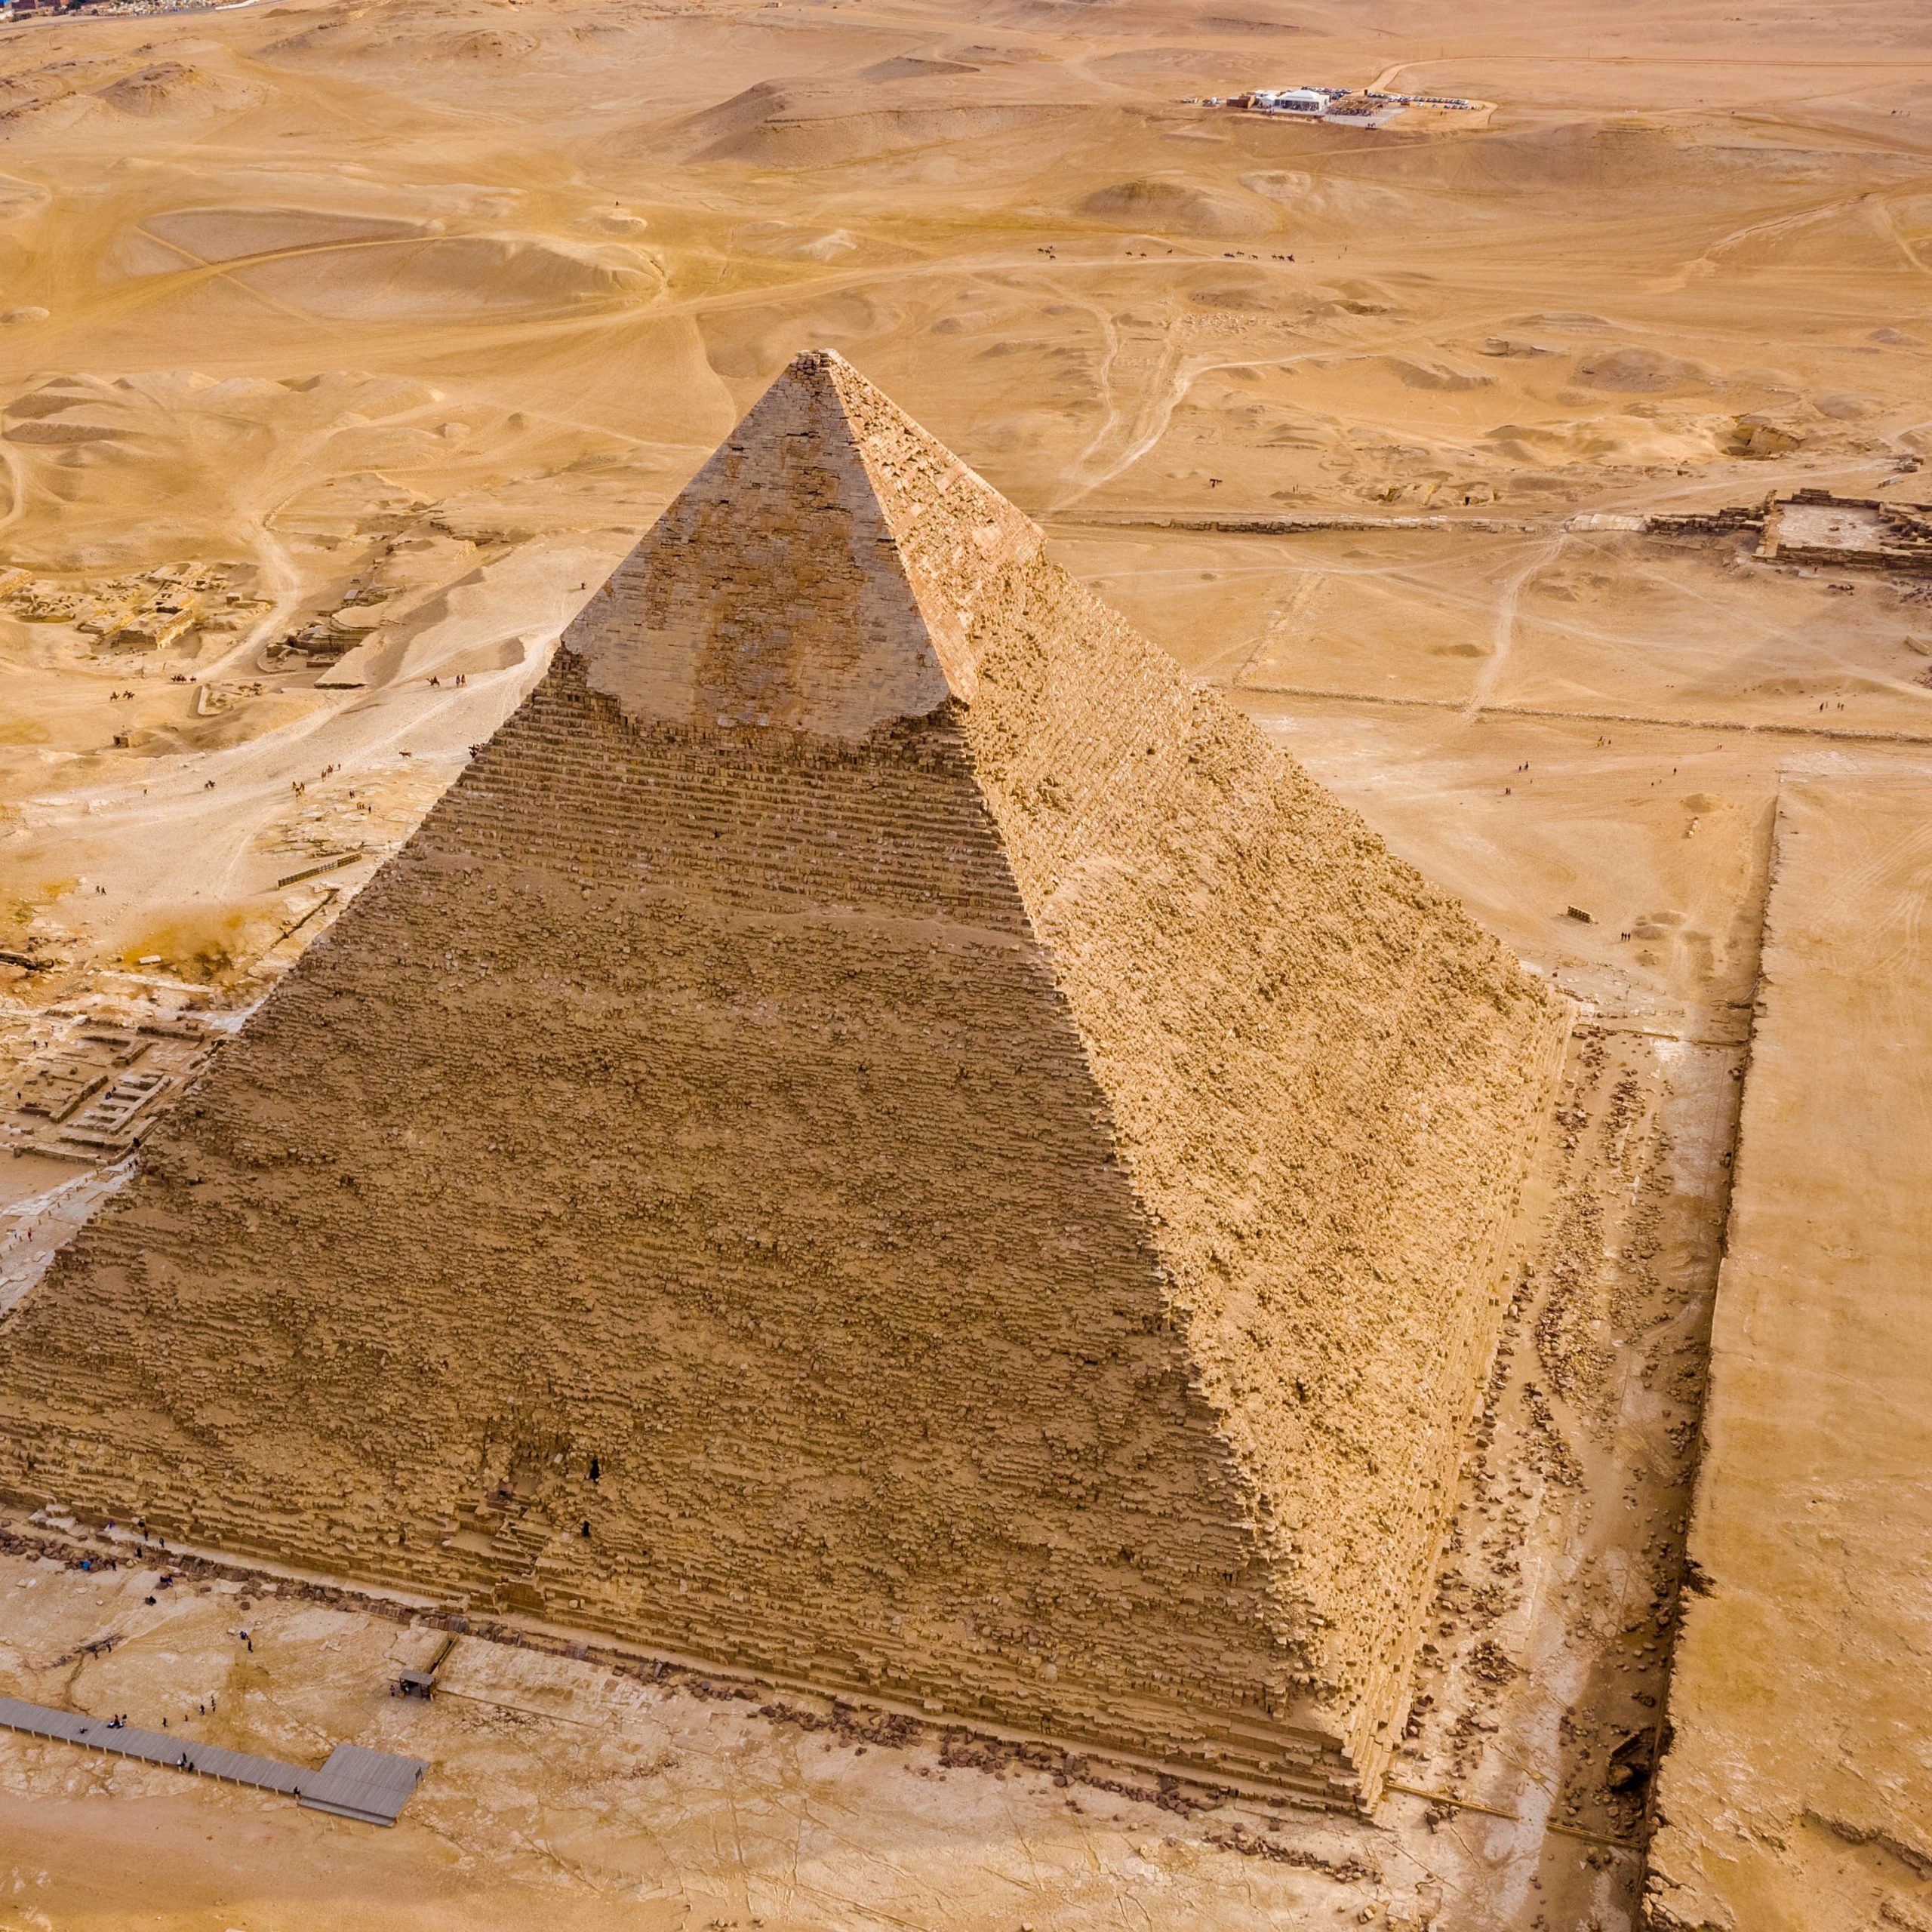 Khufu Pyramid – Cheops Pyramid